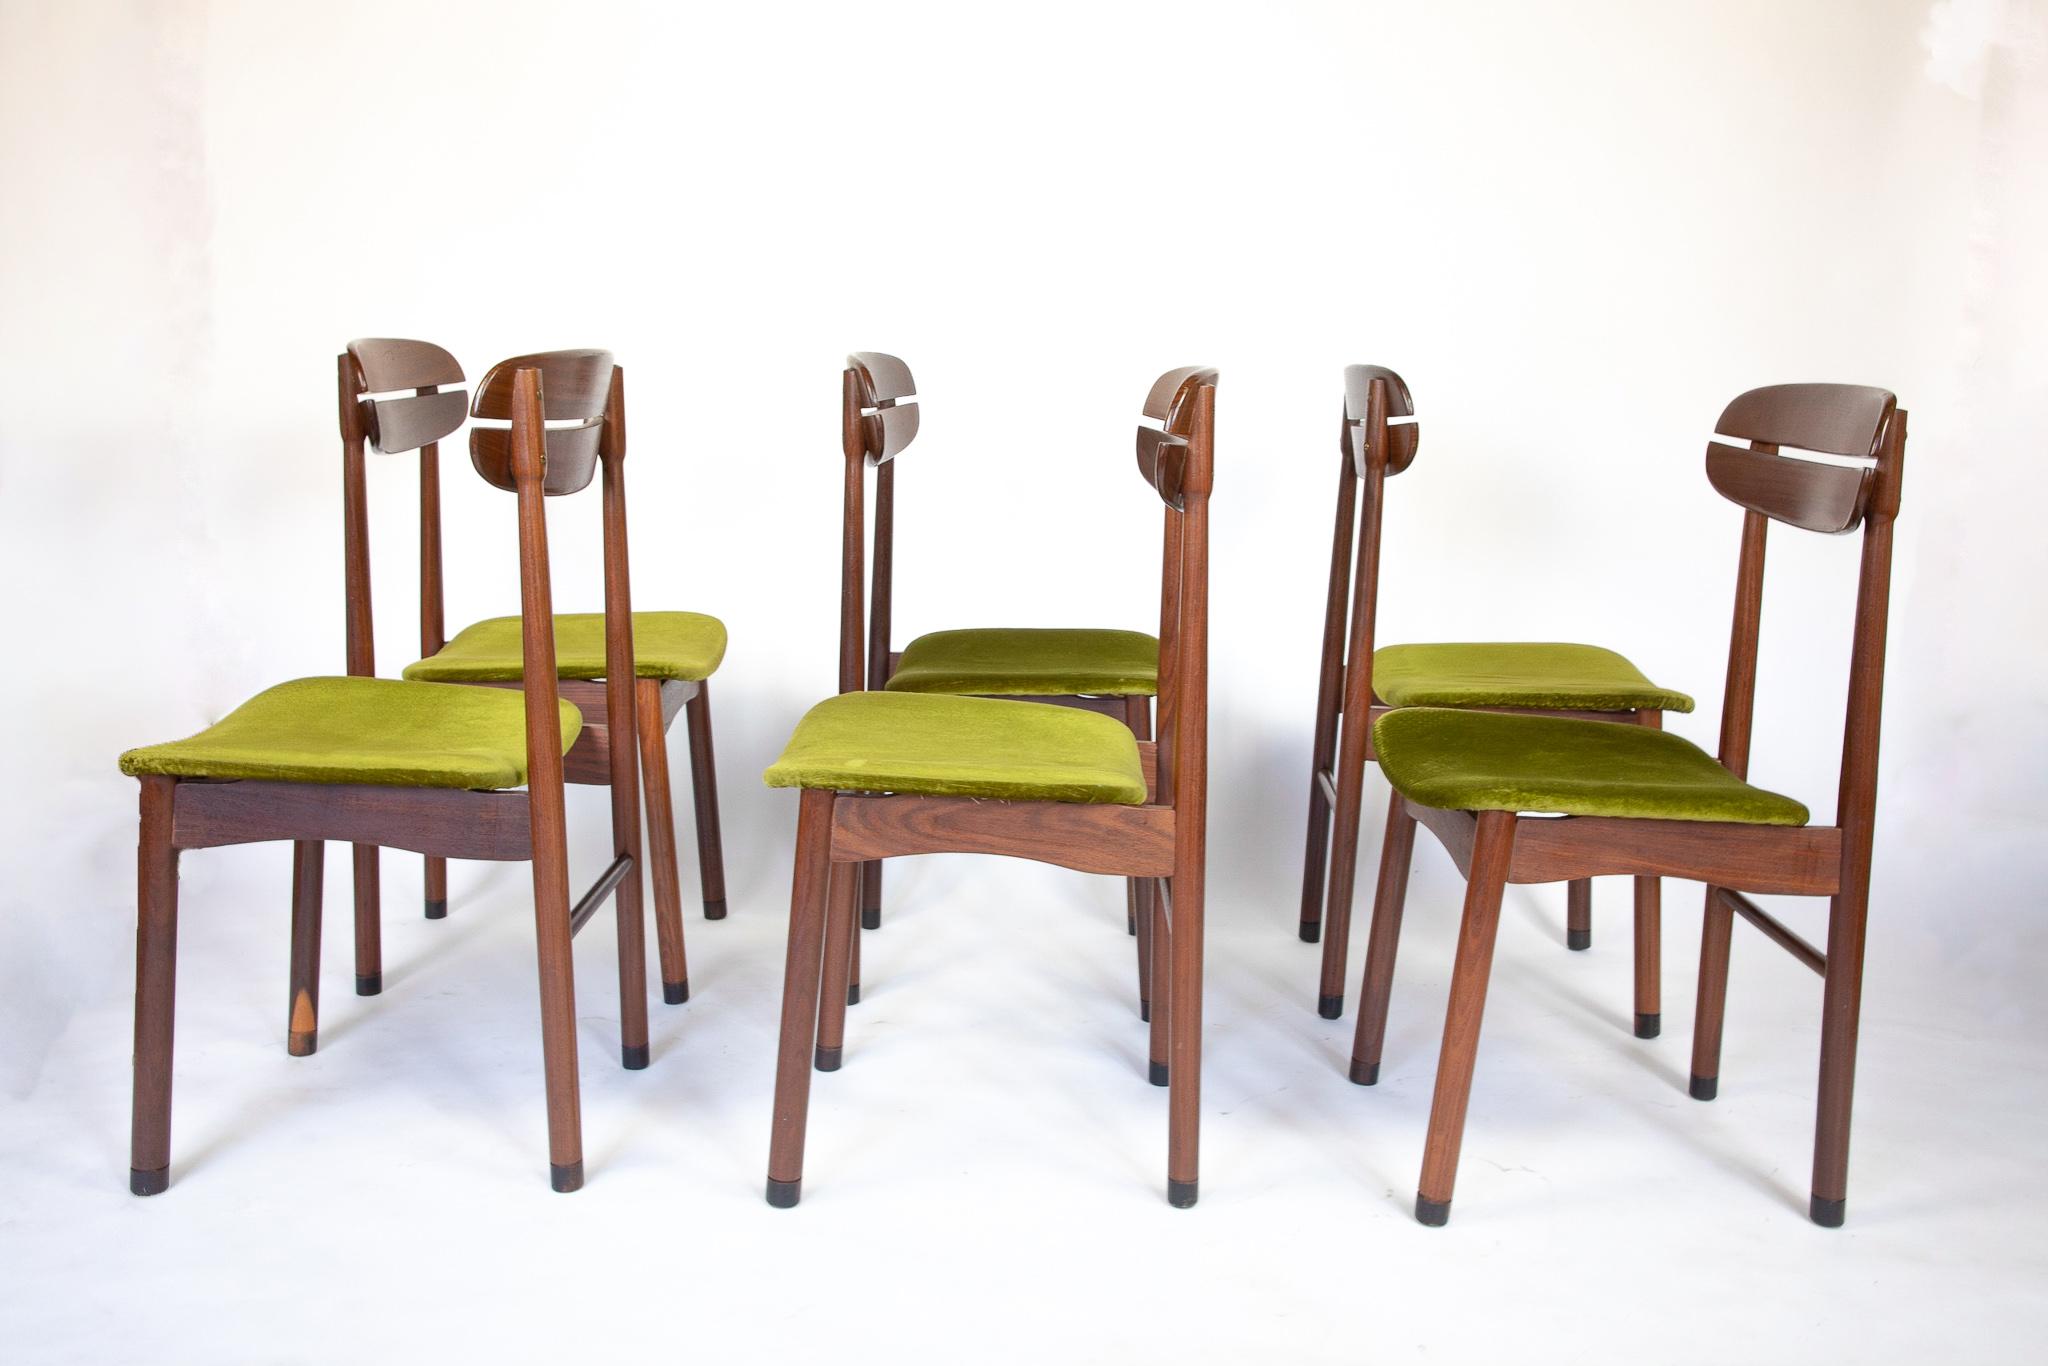 1950s kitchen chairs